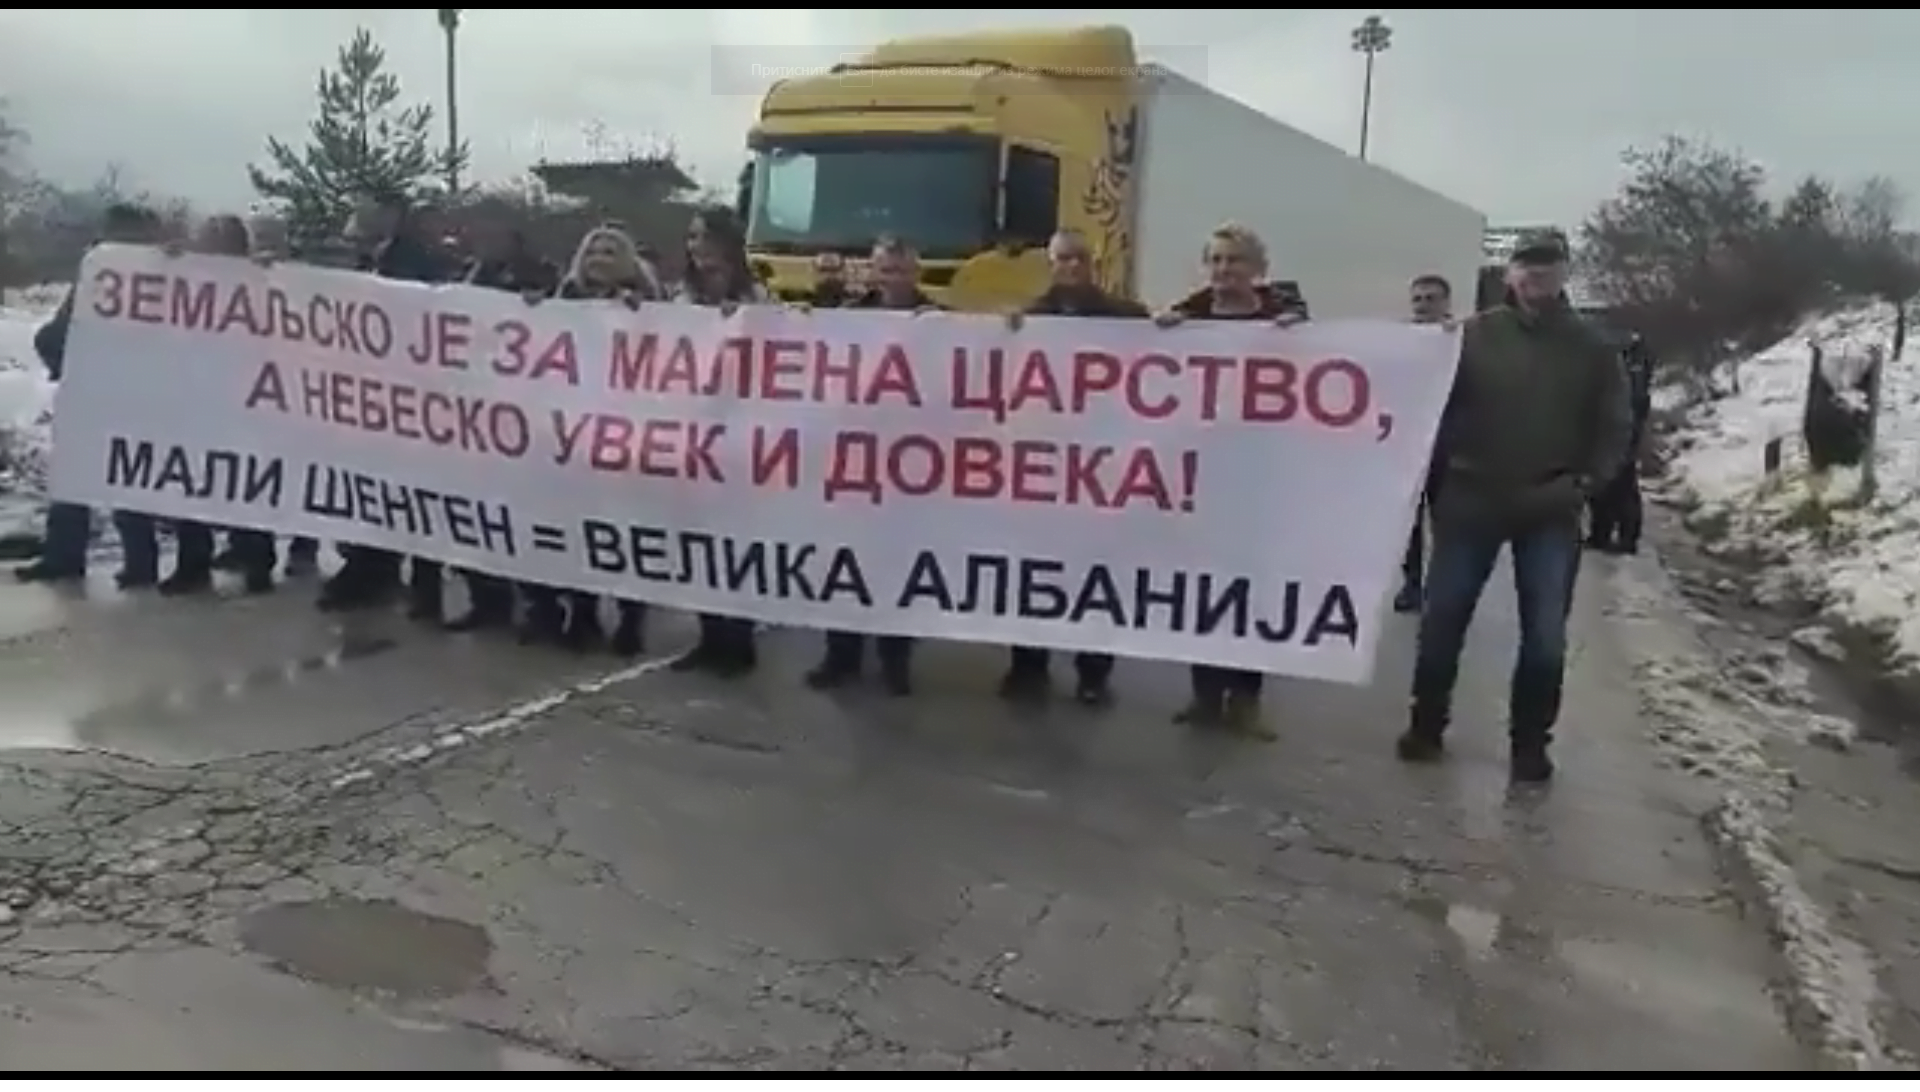 Срби блокирали пут код Мердара паролом: Мали Шенген - Велика Албанија! (Видео)